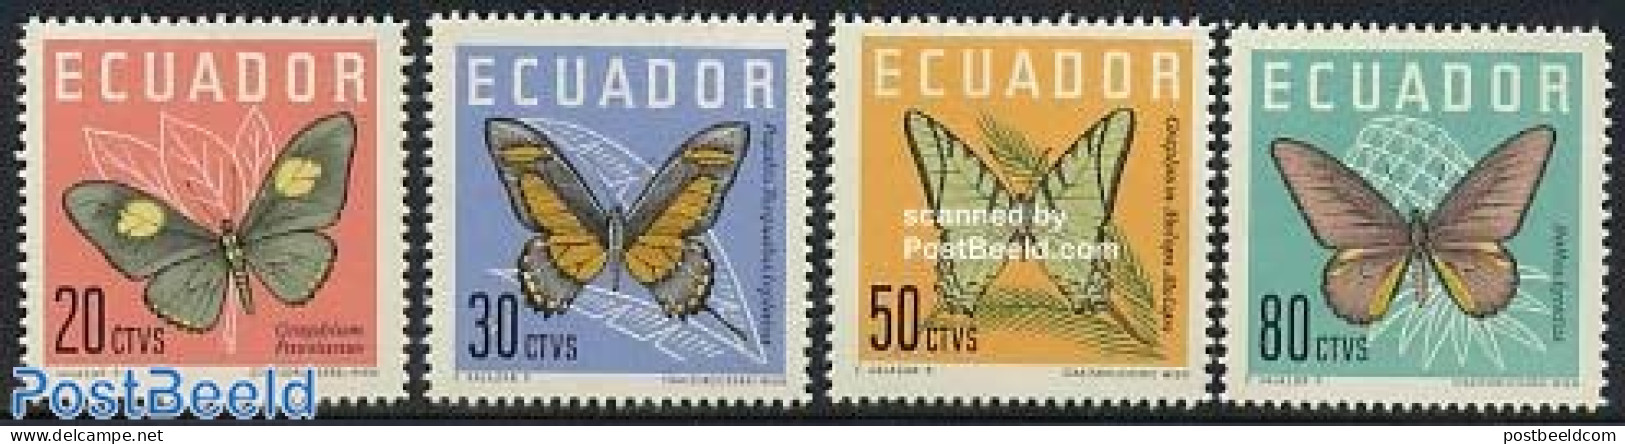 Ecuador 1961 Butterflies 4v, Mint NH, Nature - Butterflies - Ecuador